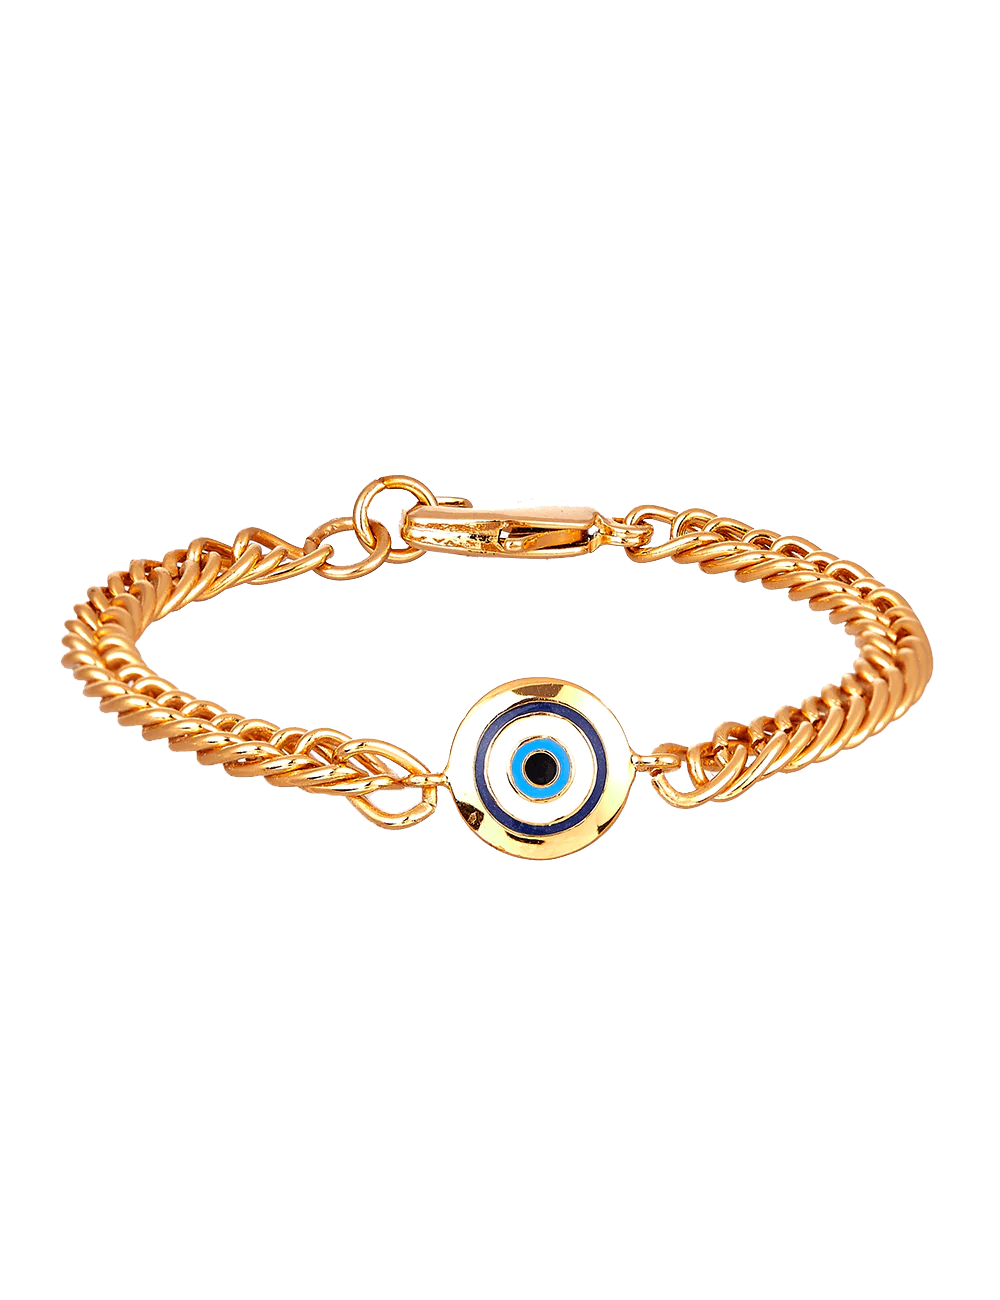 Top more than 146 evil eye bracelet benefits super hot - kidsdream.edu.vn